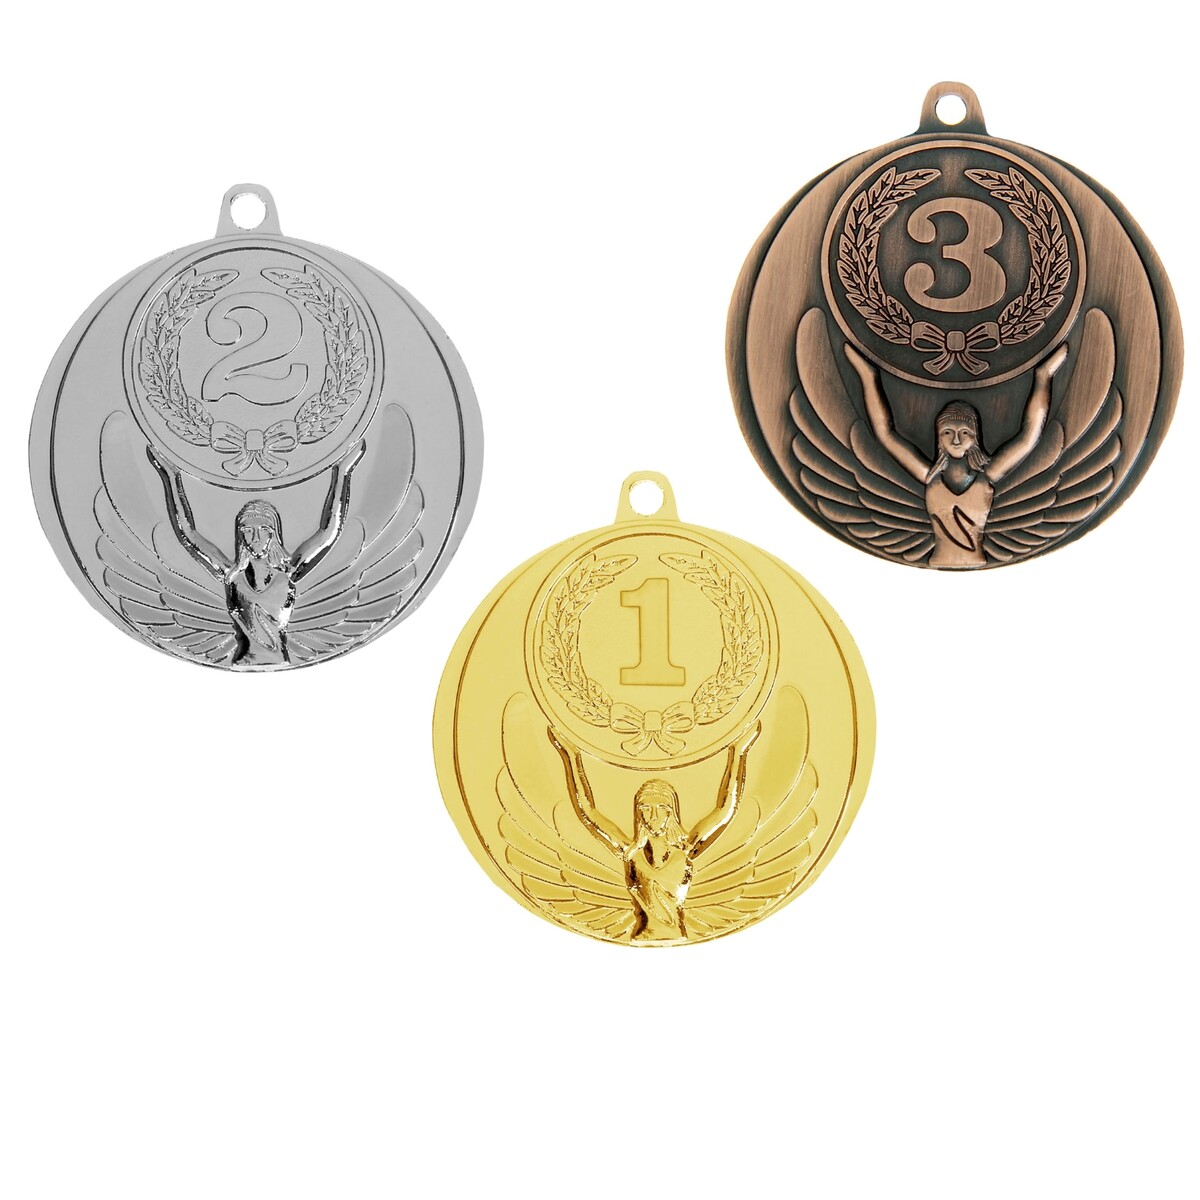 Медаль призовая 017 диам 4,5 см. 3 место. цвет бронз. без ленты медаль призовая 021 диам 4 см 3 место бронз без ленты